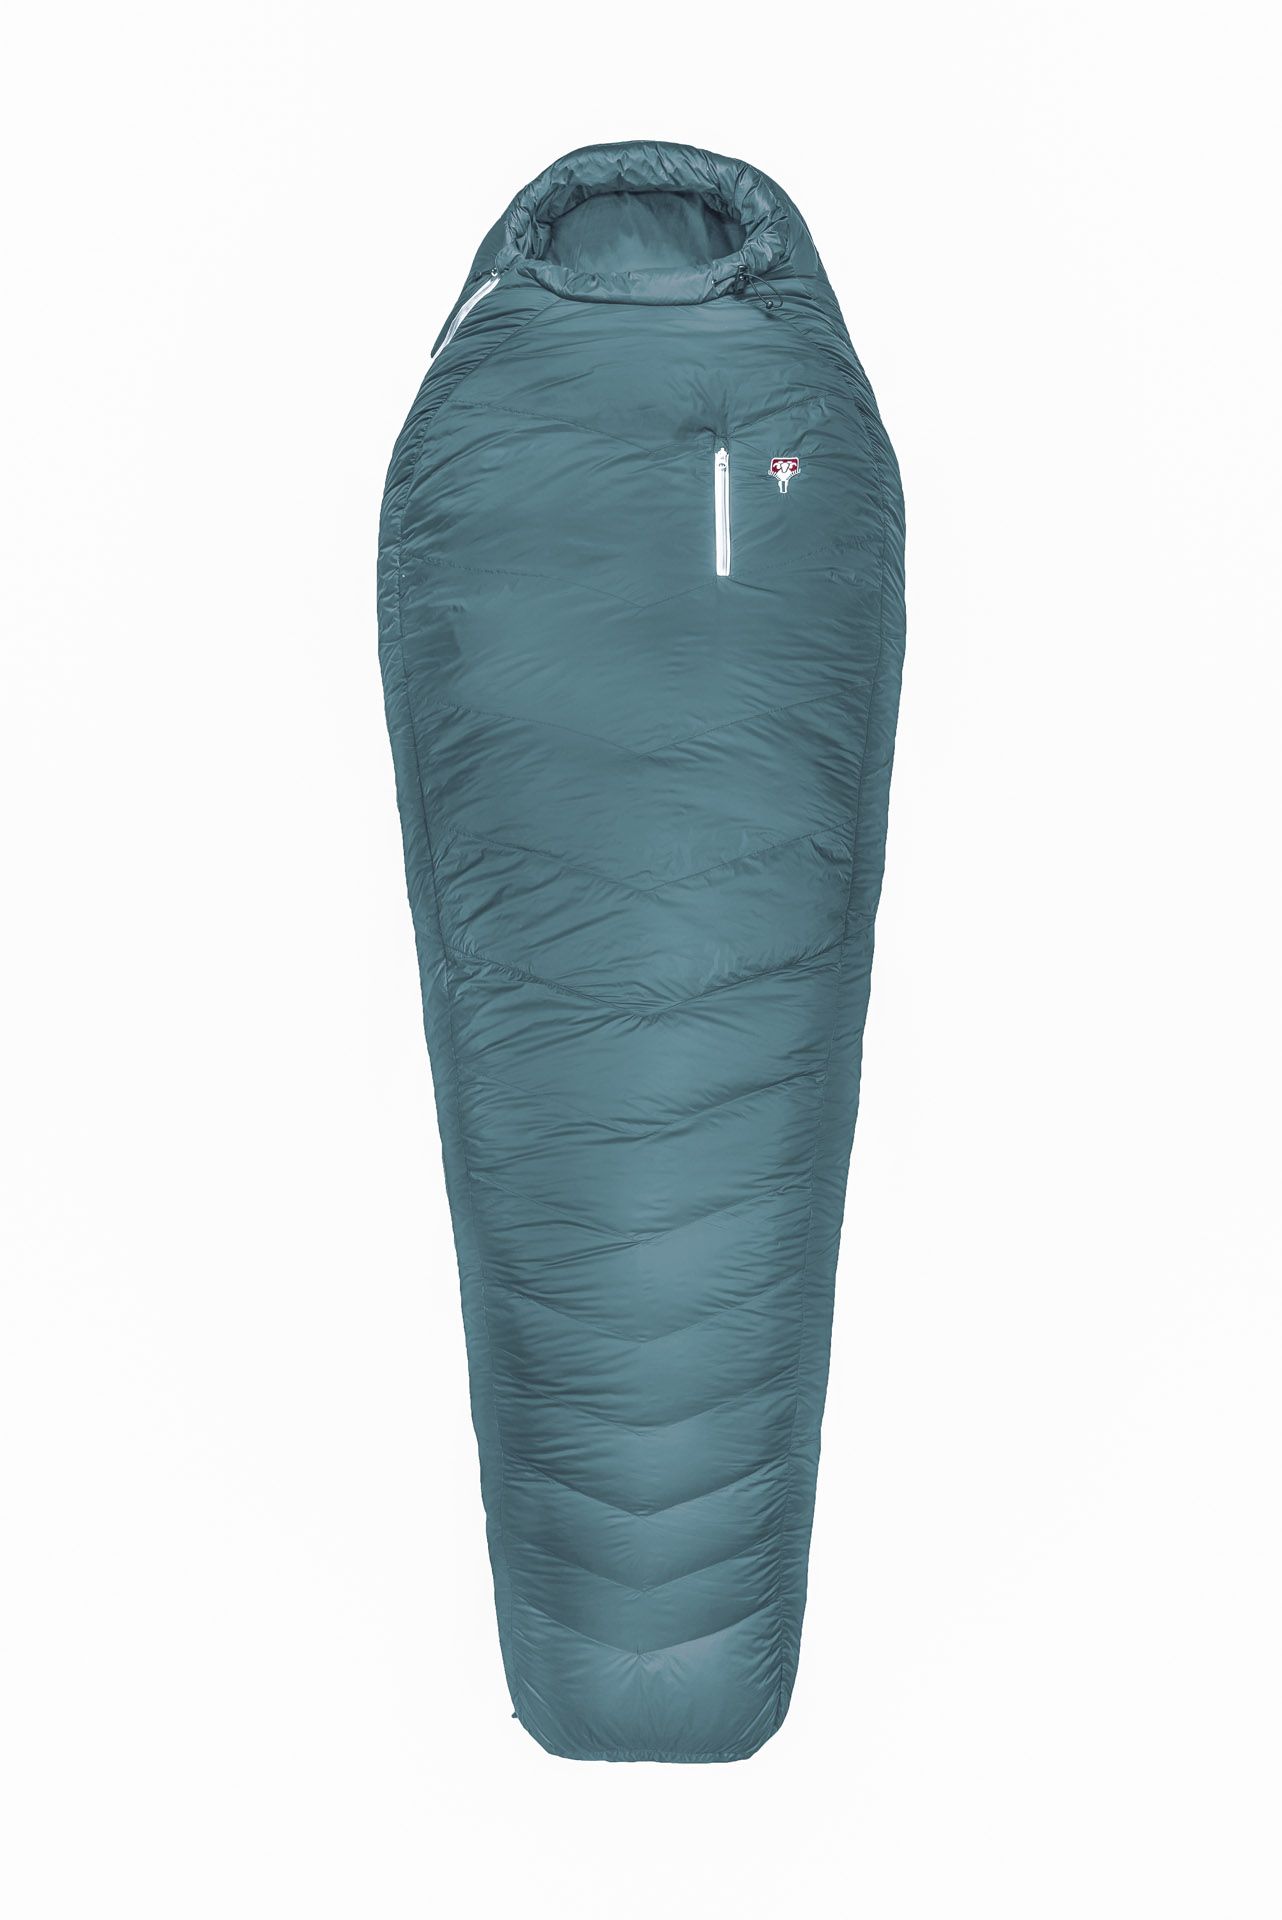 Grüezi bag Biopod Down Hybrid Ice Cold warmer Winter Schlafsack,  Körpergröße 180-205 cm, Tkomf -5